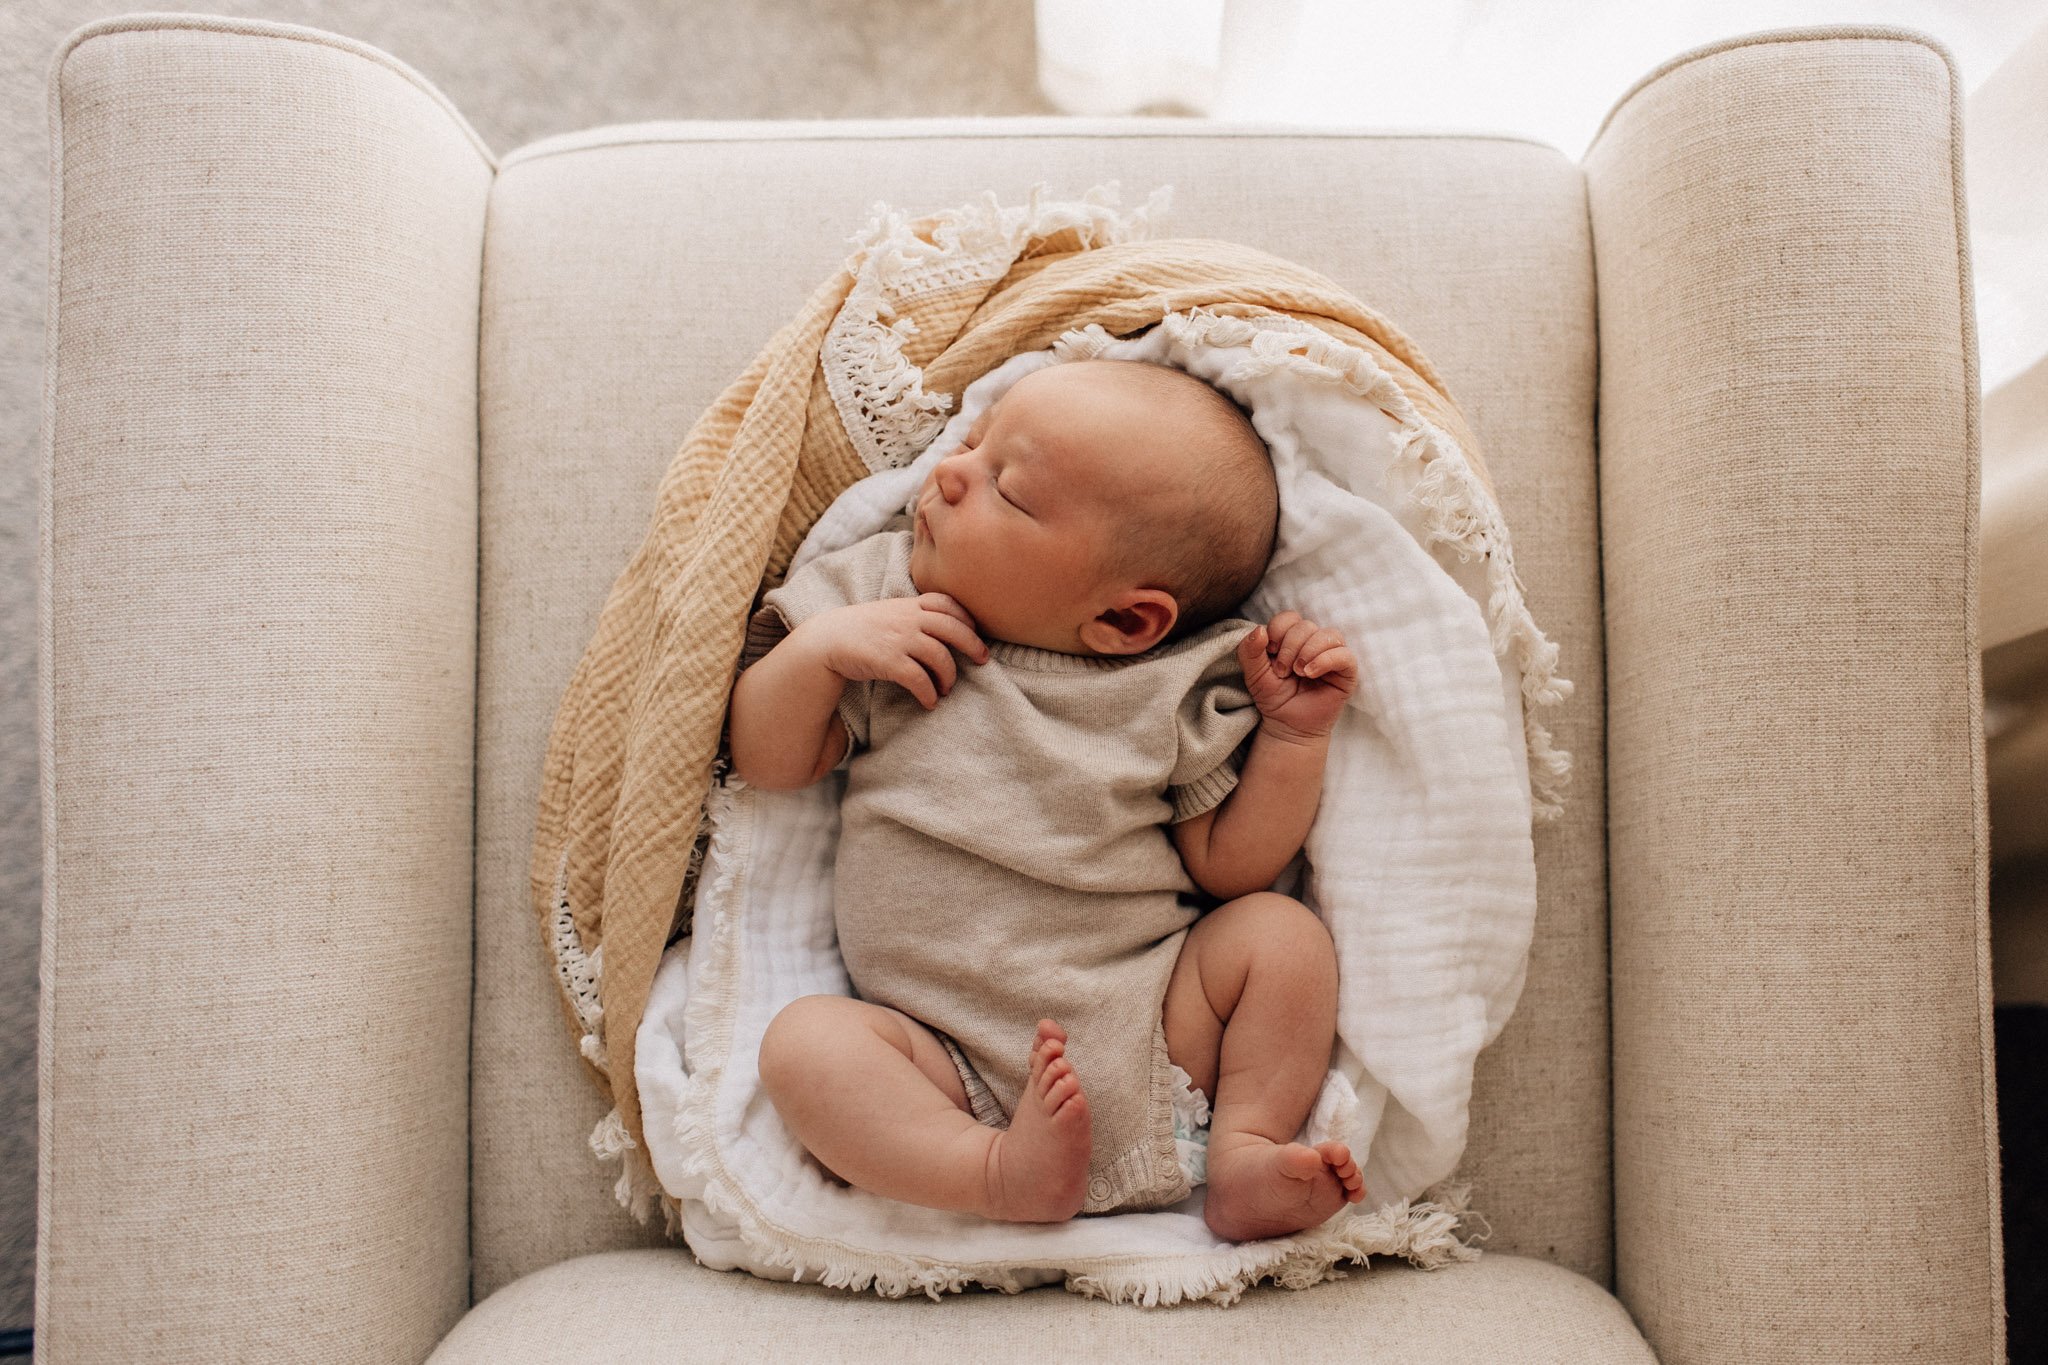 Newborn baby in blanket nest on white chair.jpg